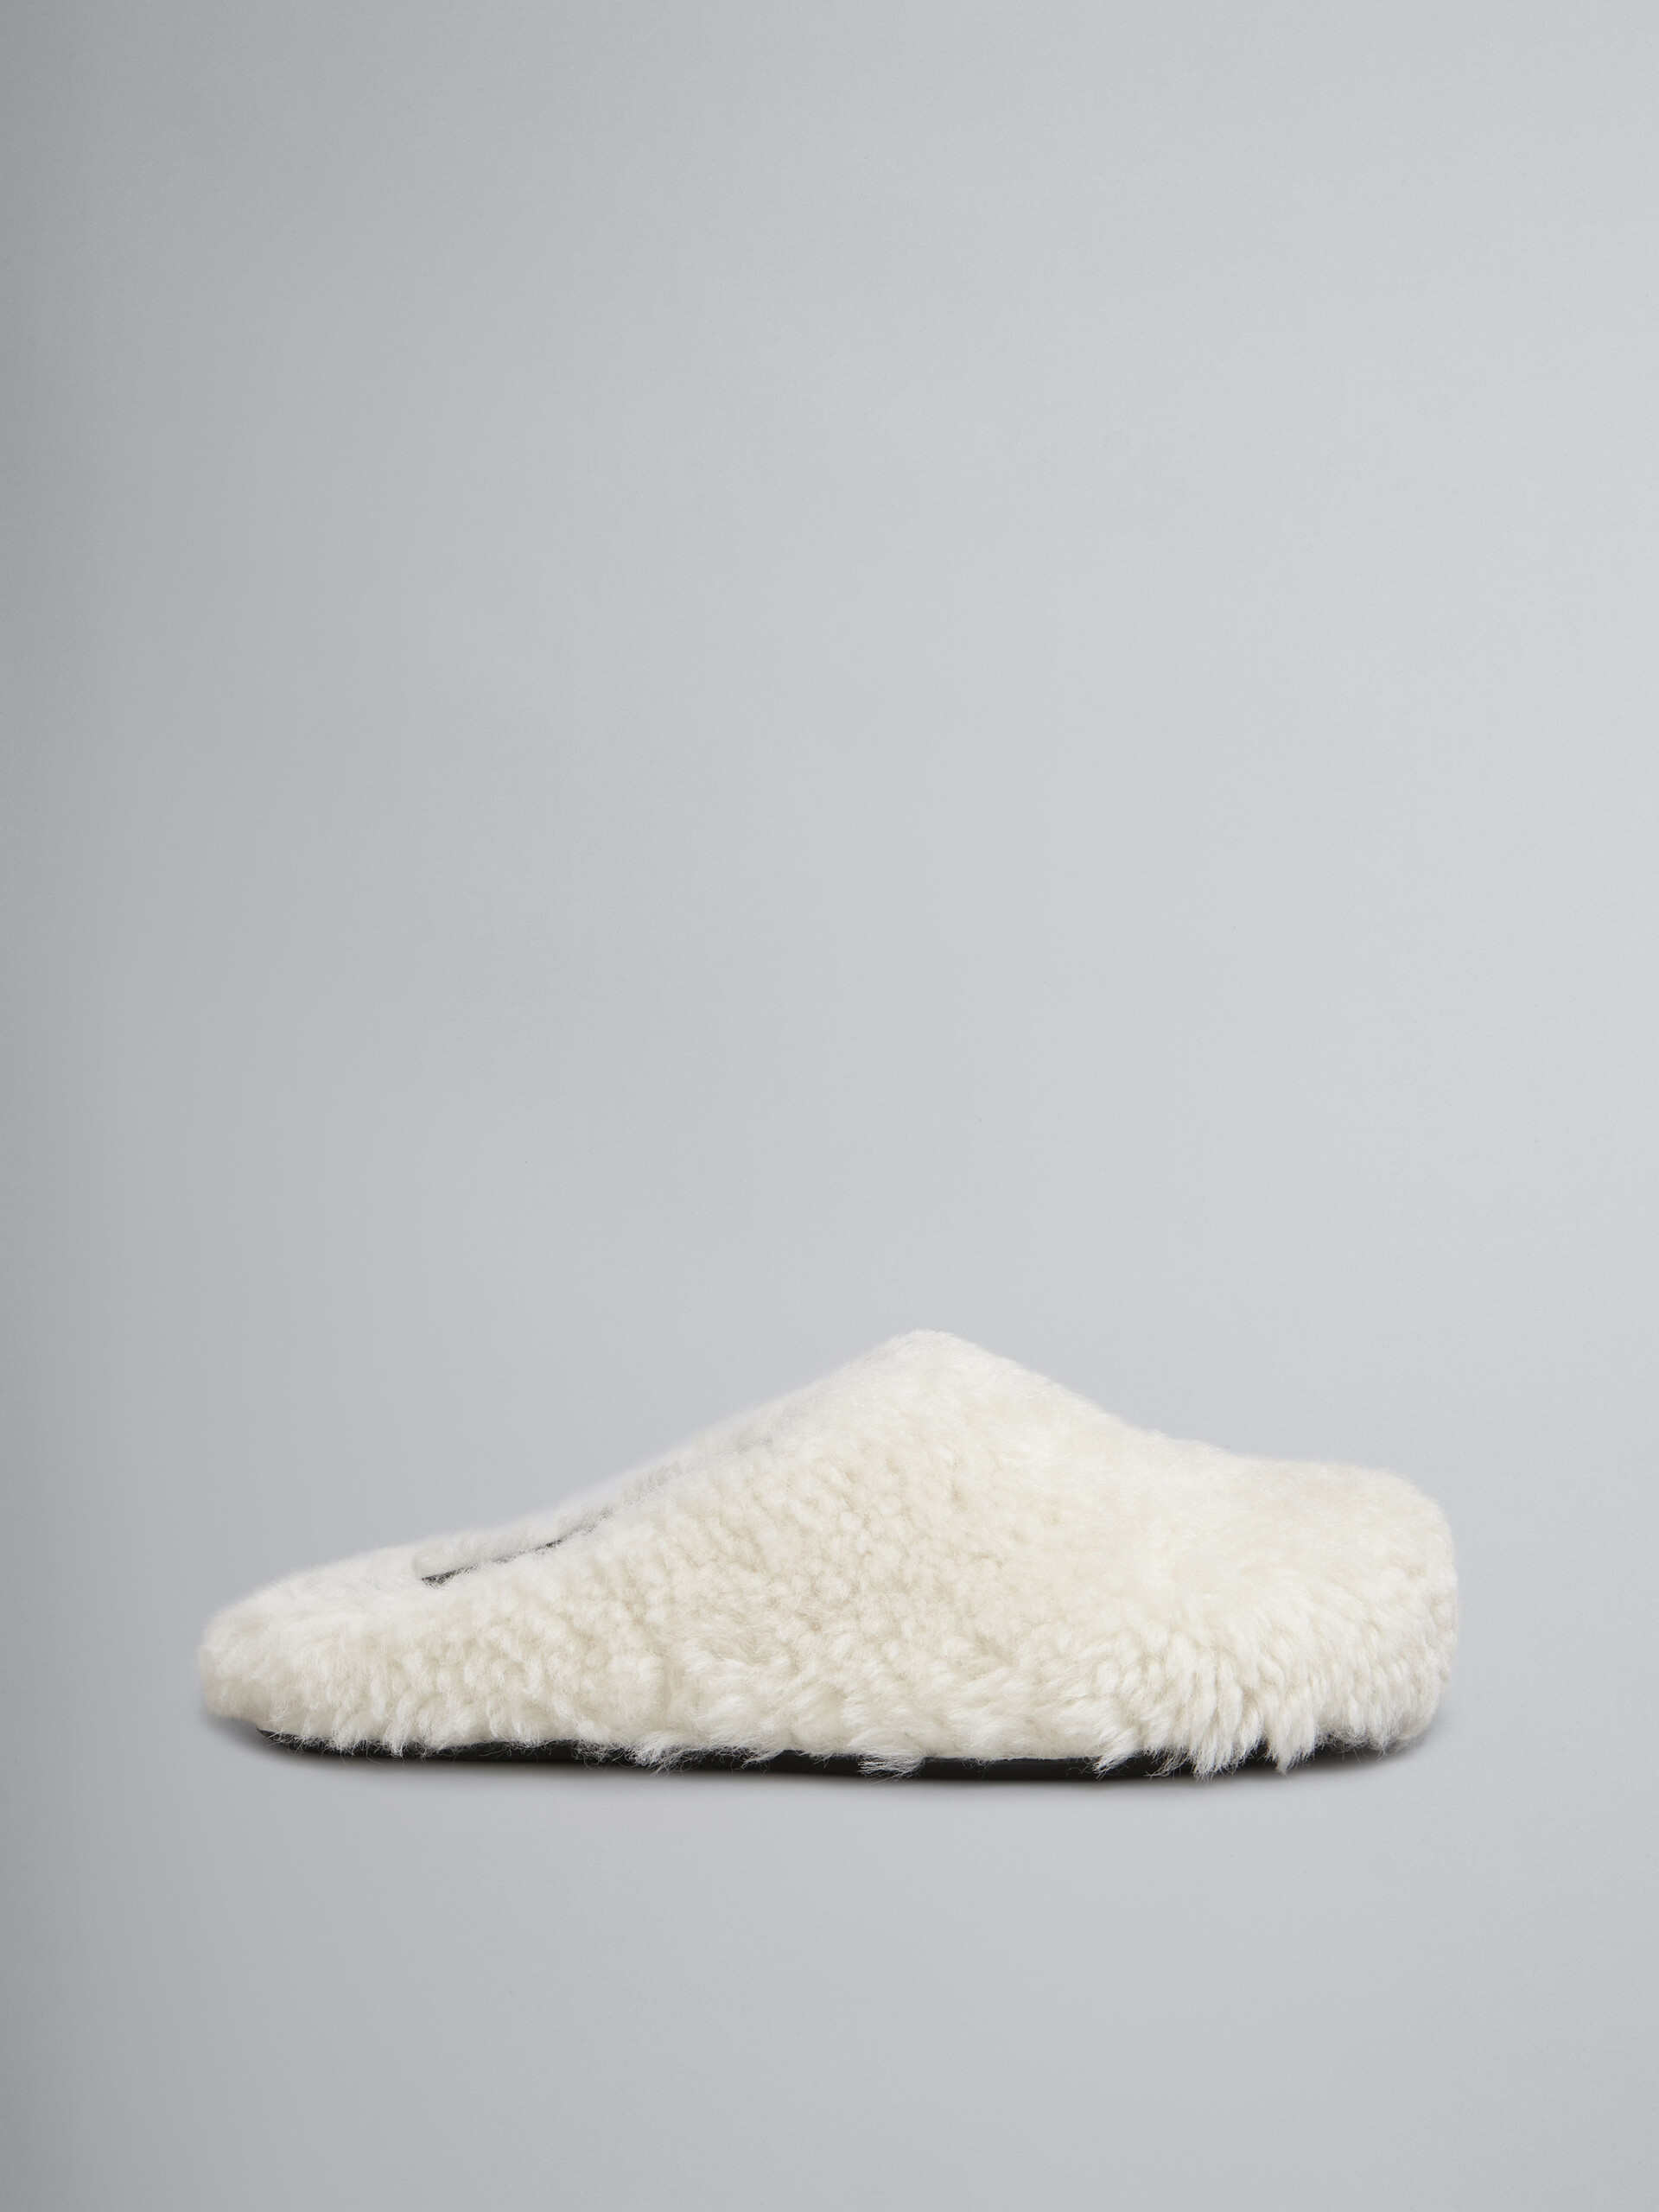 Fussbett blanco de pelo de oveja rizado - Zuecos - Image 1